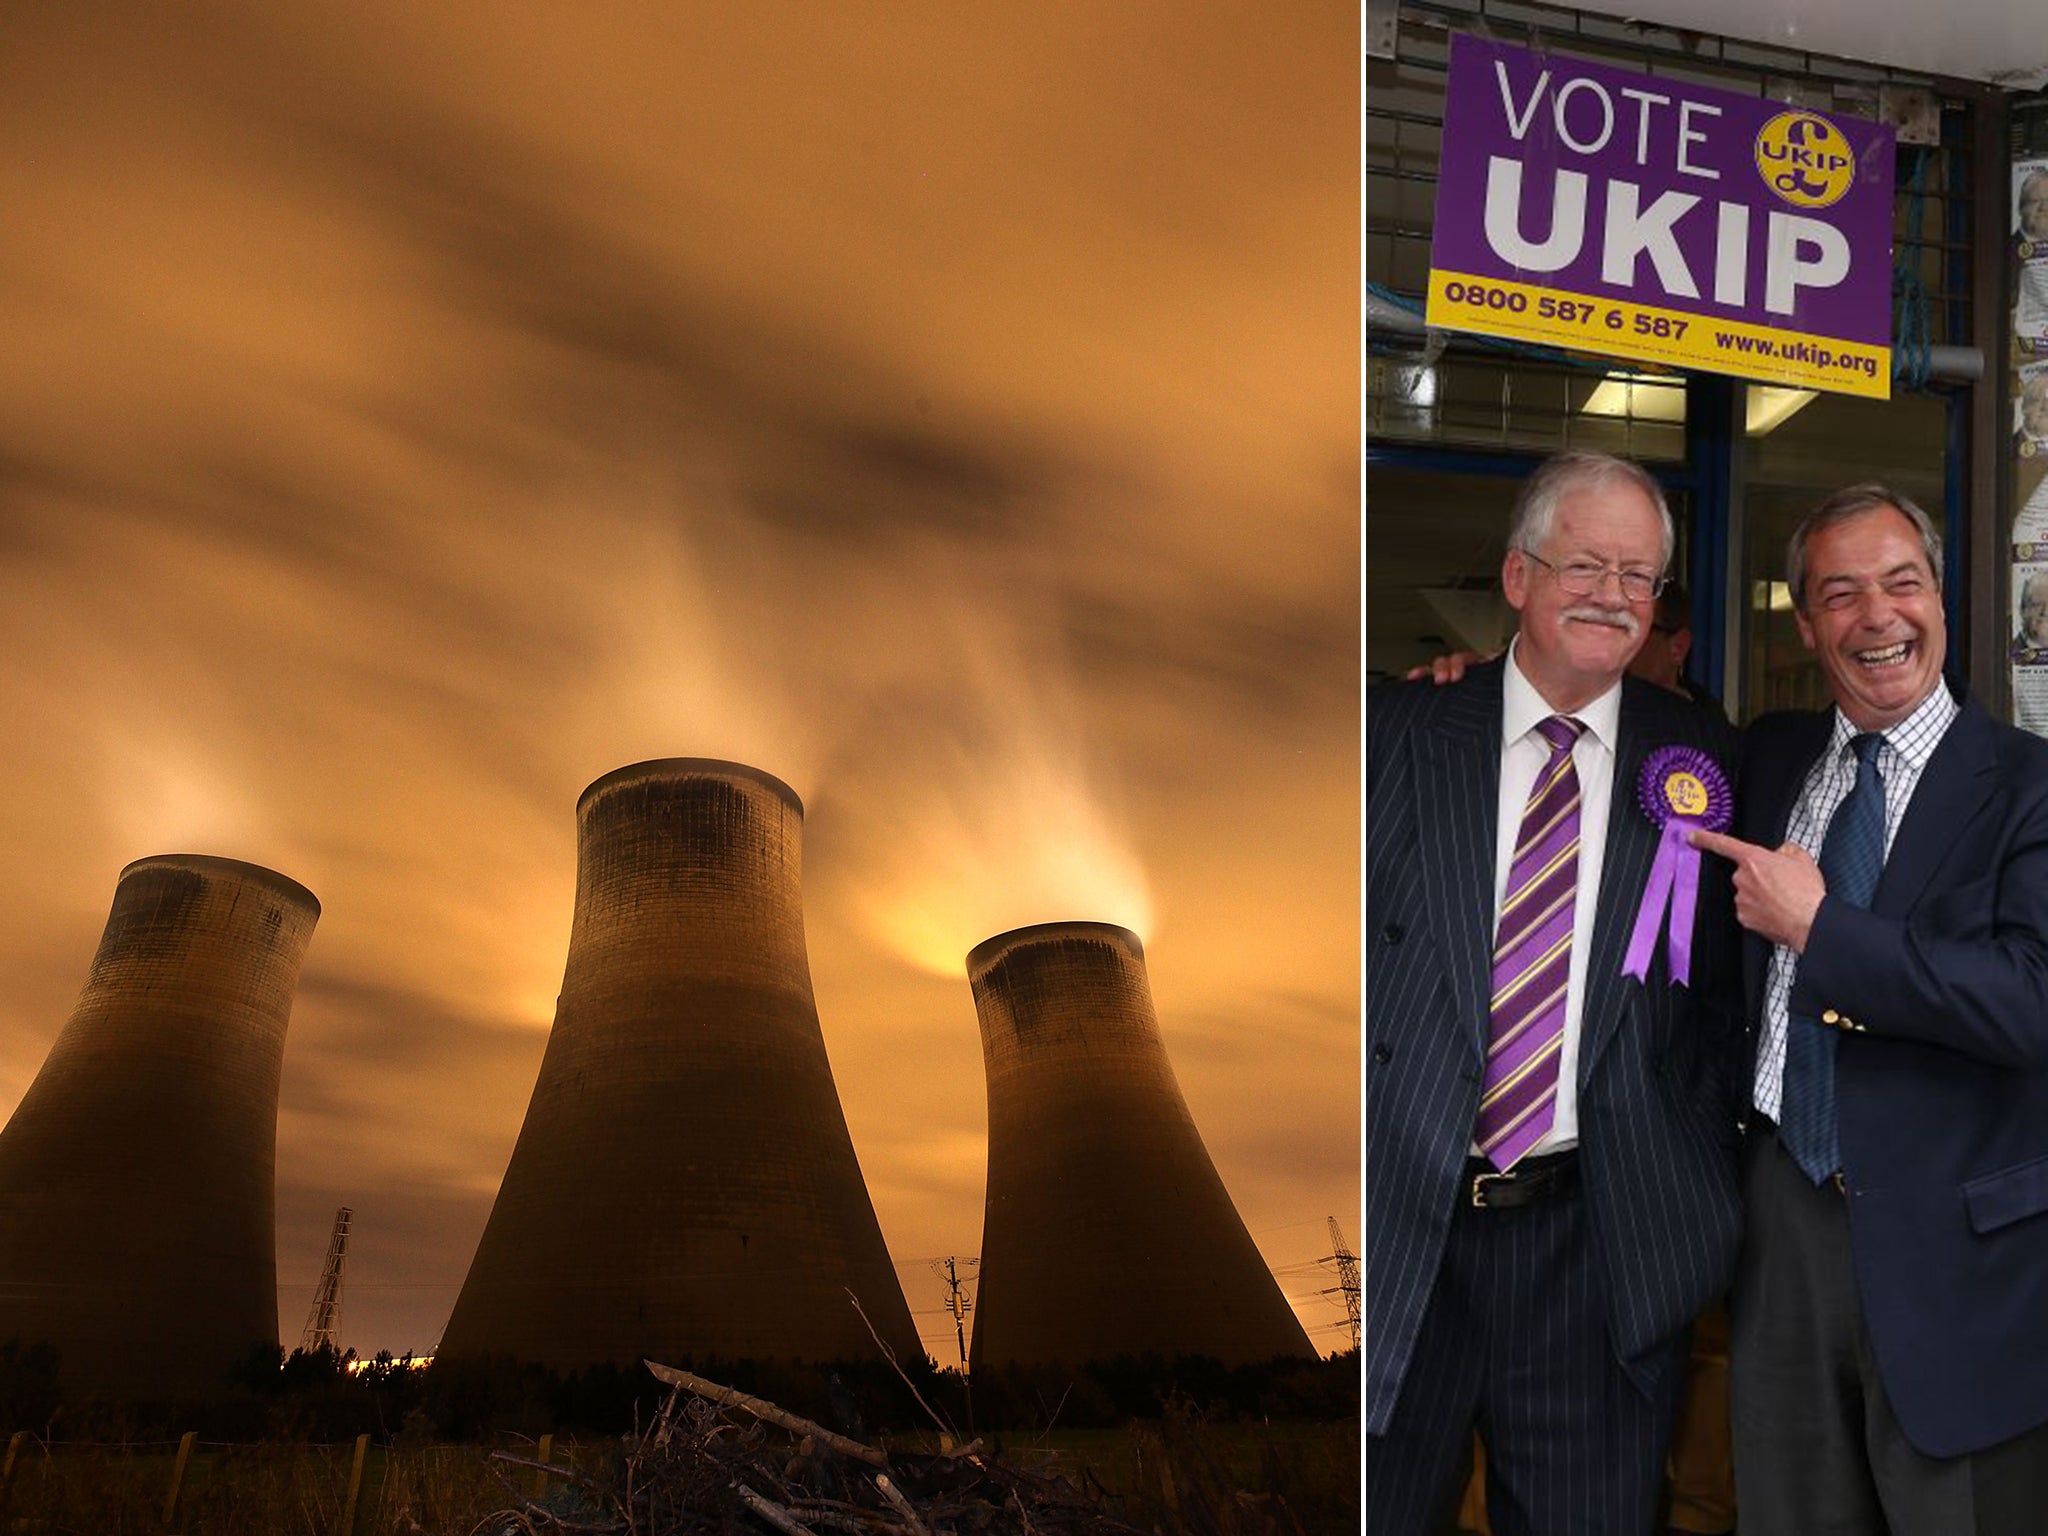 Roger Helmer (left, with Ukip party leader Nigel Farage) has dismissed 'climate alarmism'